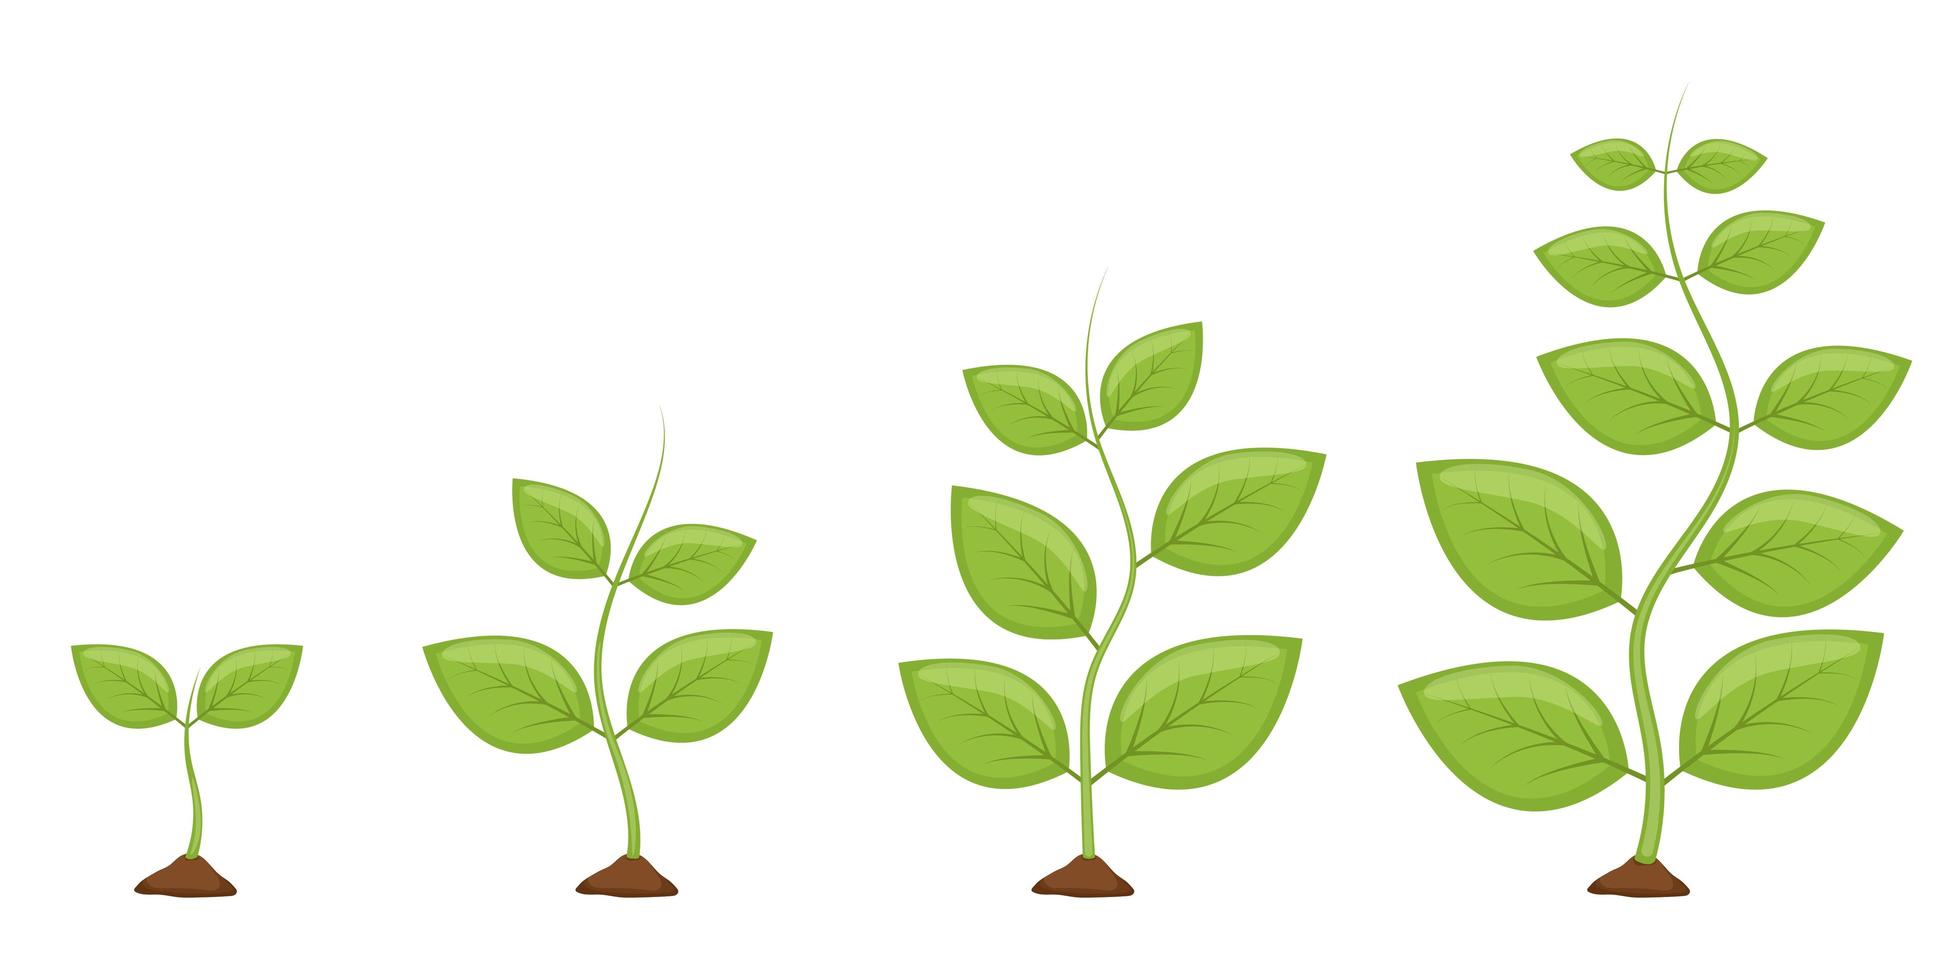 växttillväxtstadier vektor designillustration